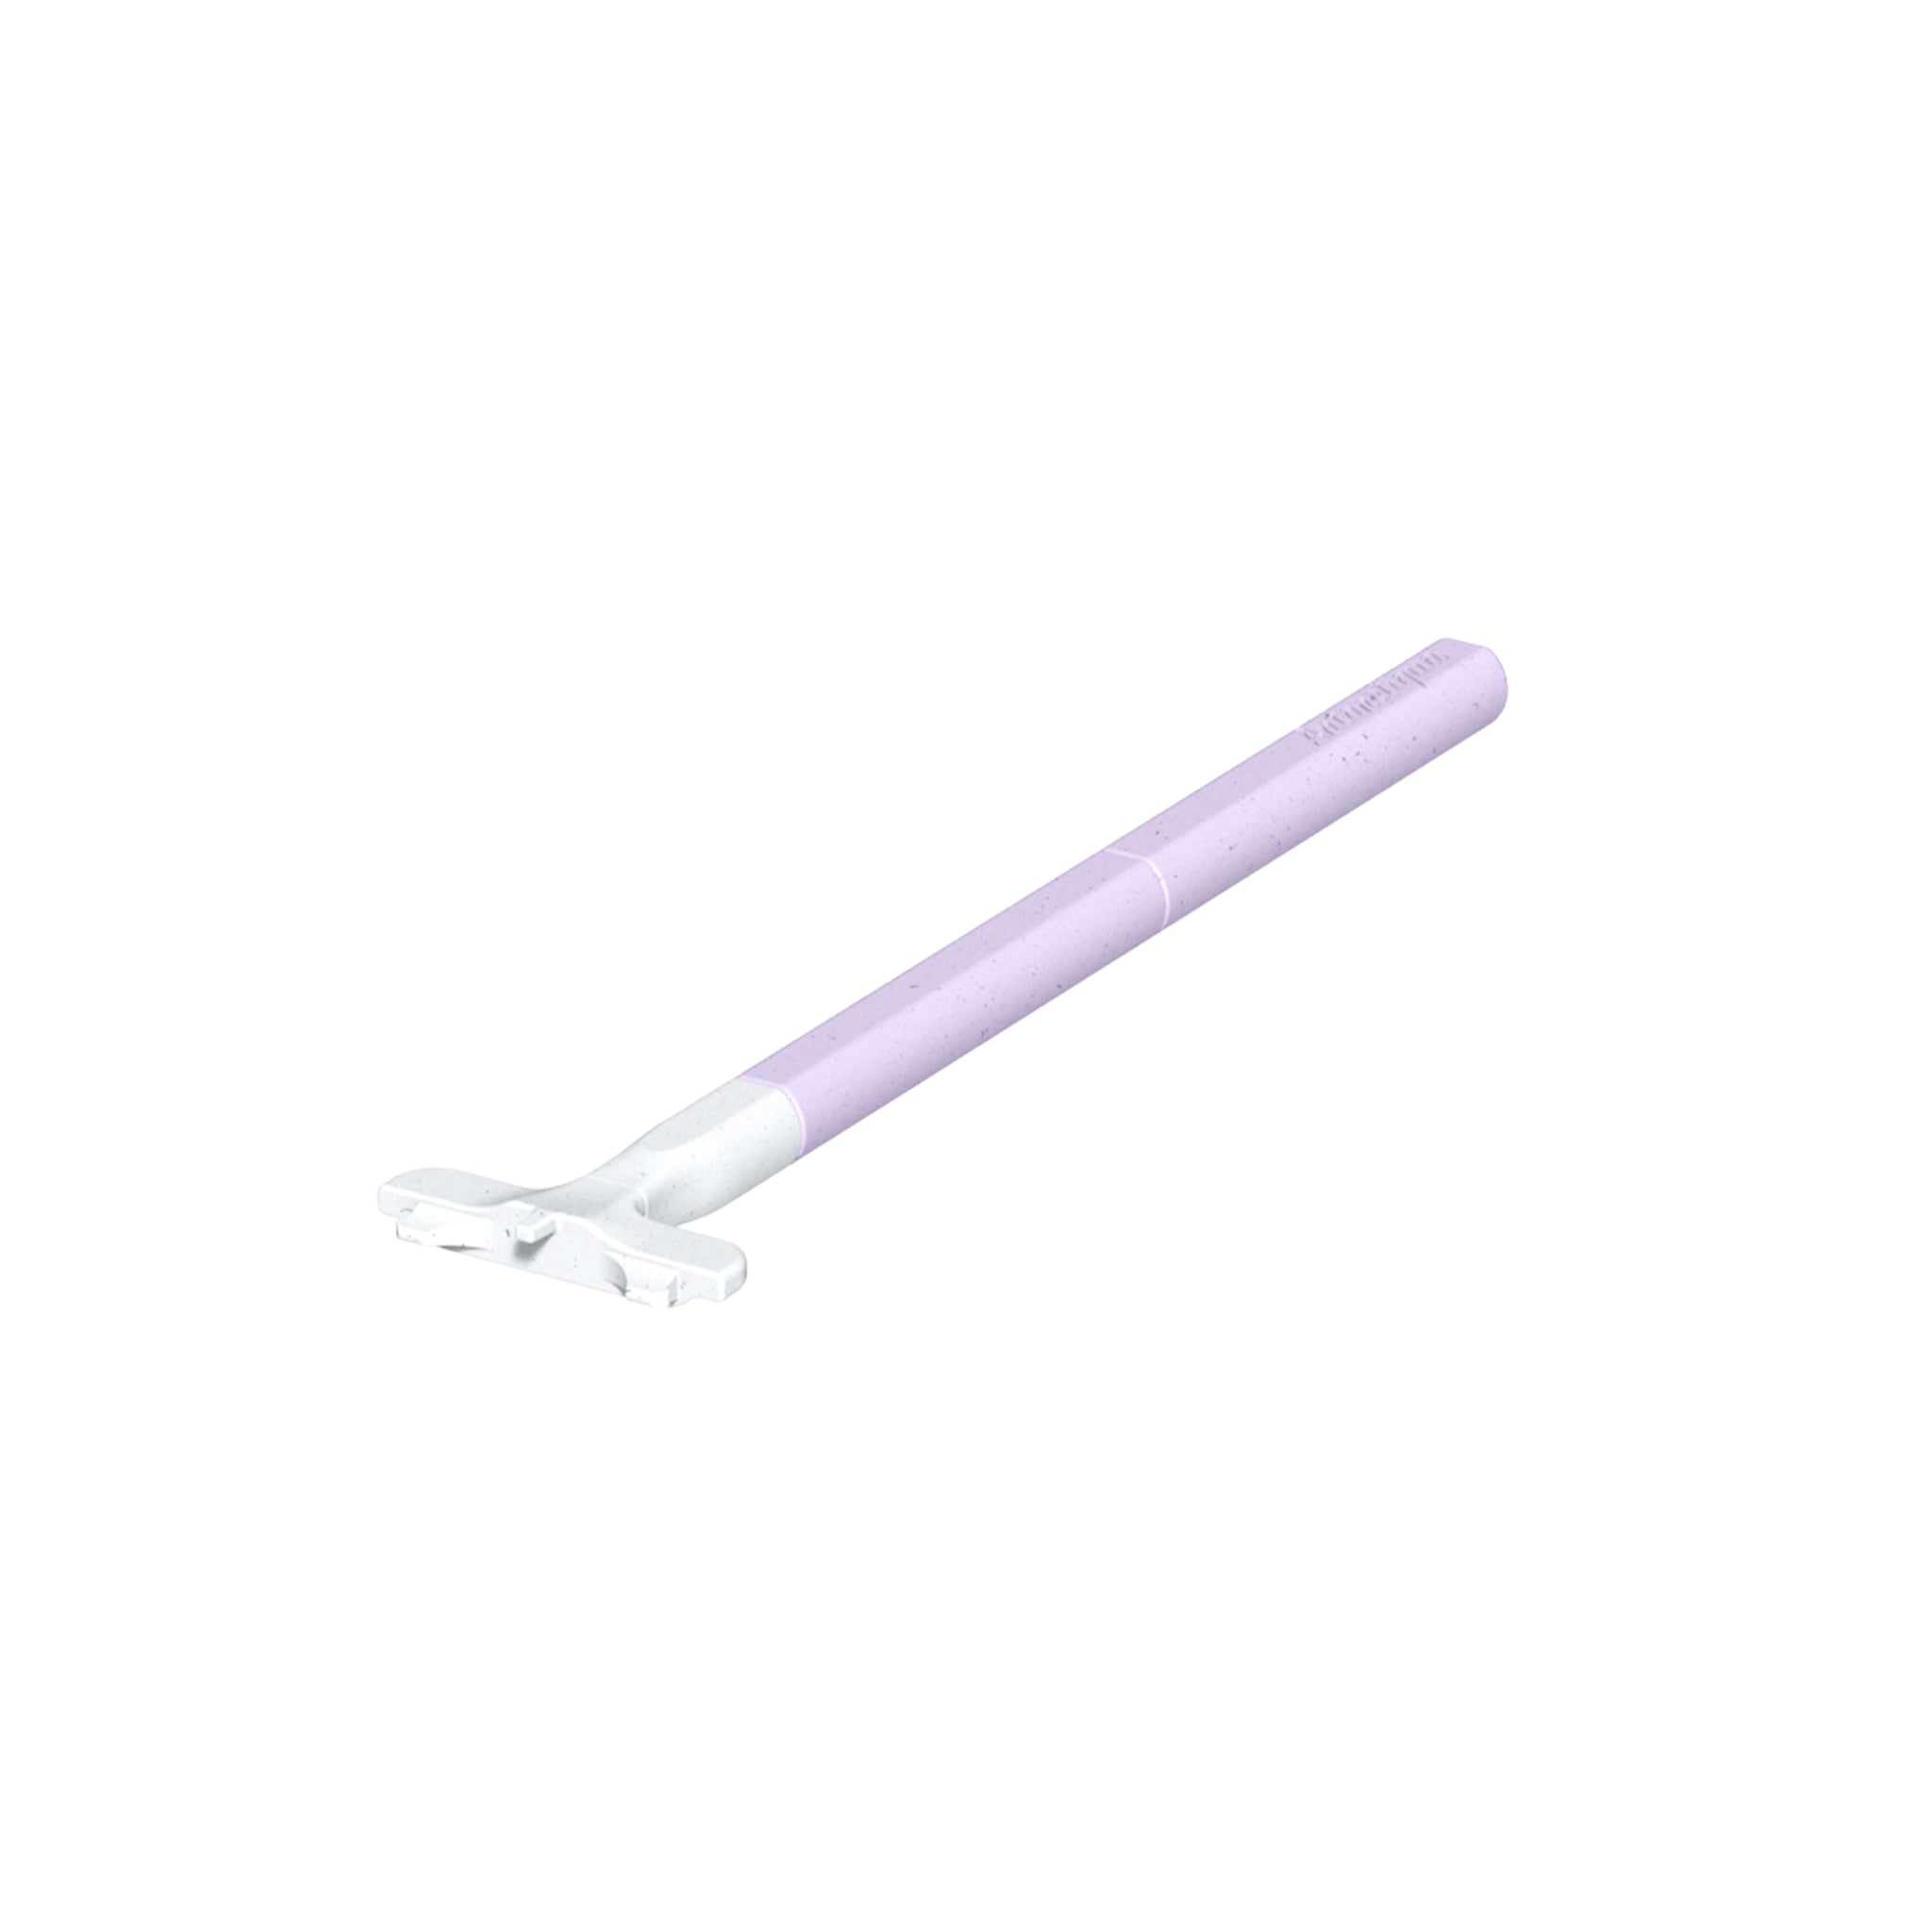 Rasoir conçu pour l'IceTower 2 en 1, embout blanc et manche lilas